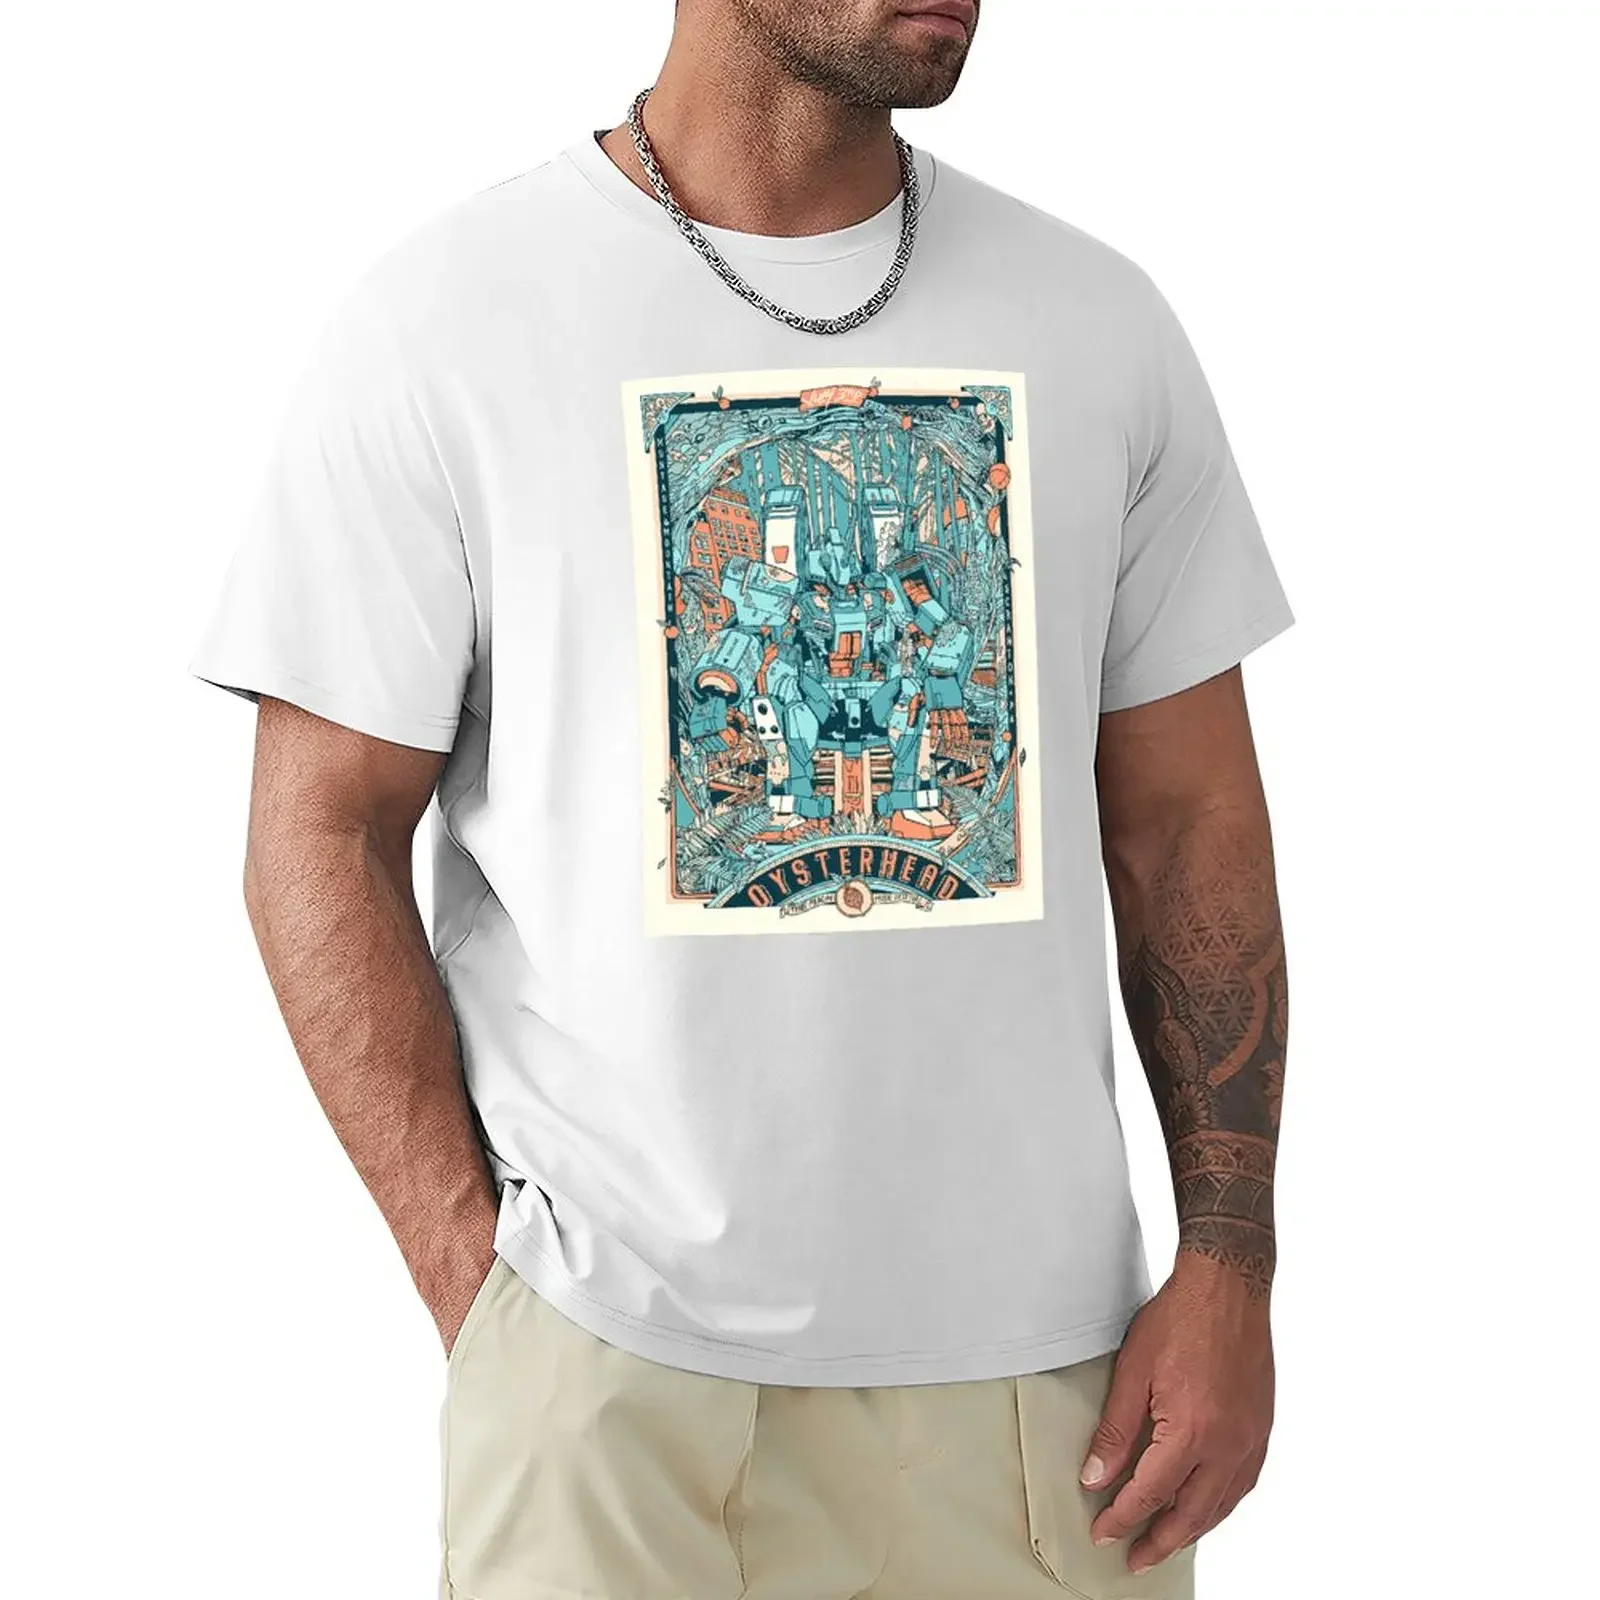 

Oysterhead персиковая музыка фестиваль 2021 футболка Графические футболки забавная футболка футболки оверсайз для мужчин